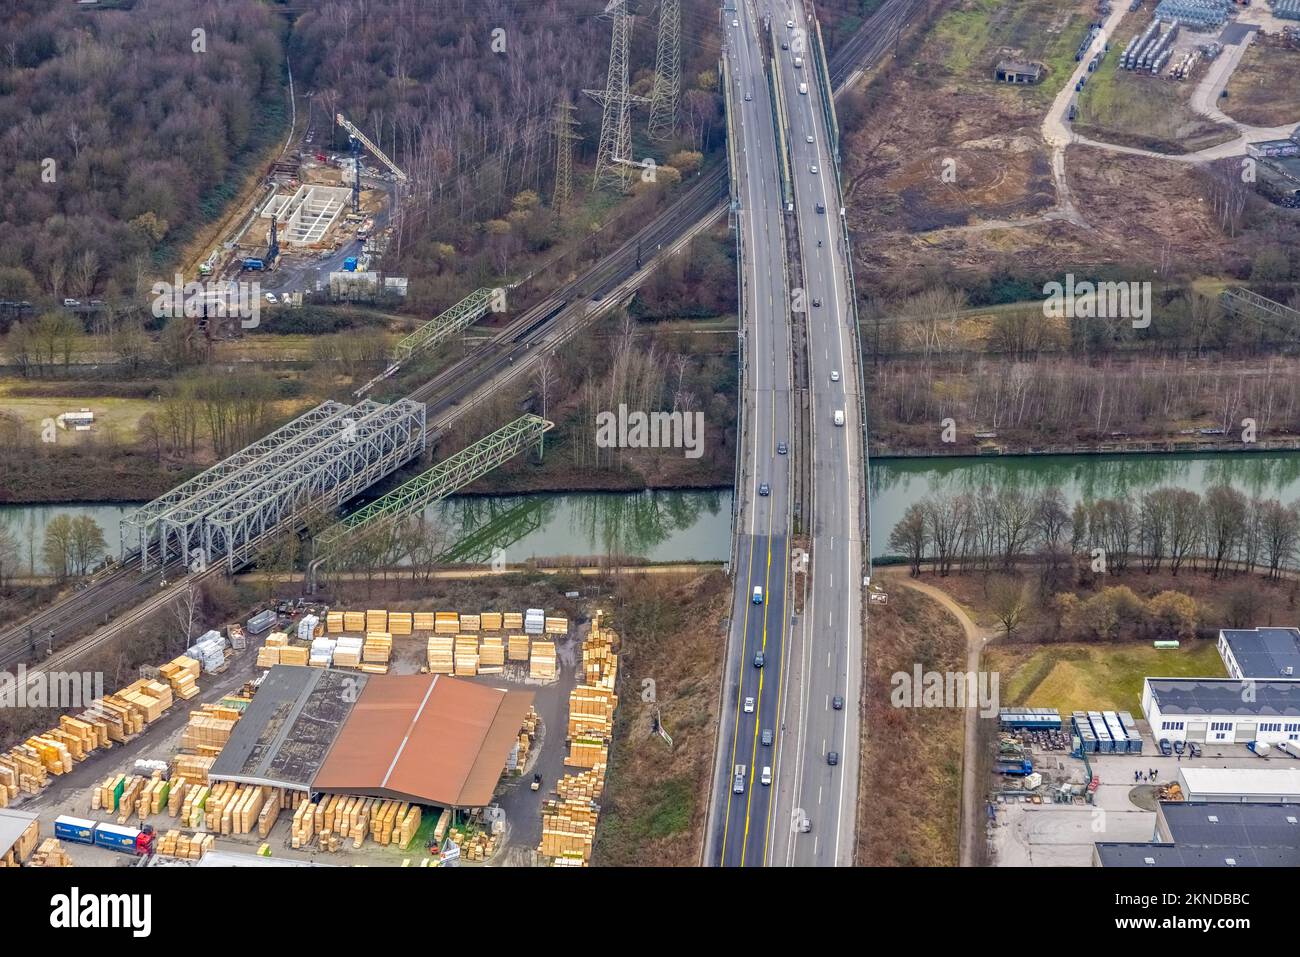 Vista aerea, stress test del ponte Emscher dell'autostrada A43 e del ponte ferroviario sul fiume Emscher e sul canale Reno-Herne nel Baukau-W. Foto Stock